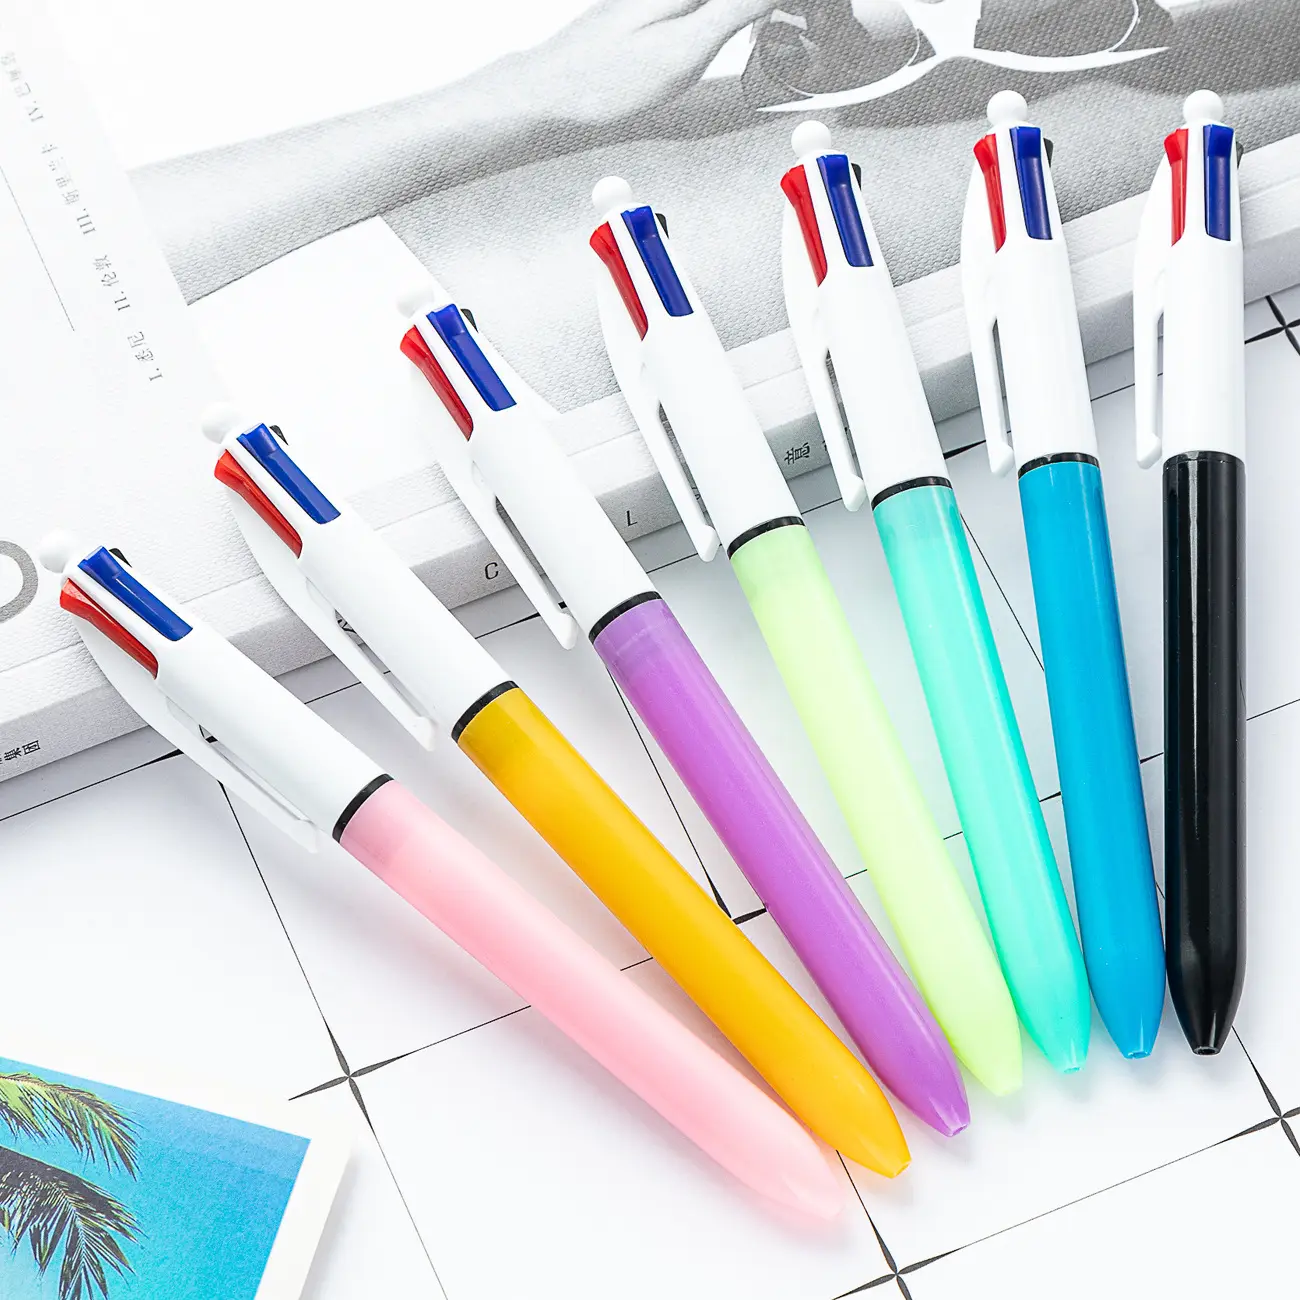 ปากกาหมึกหลากสี 4 สี วัสดุพลาสติกแปลกใหม่ 4 in 1 เติมปากกาลูกลื่นหลากสีส่งเสริมการขายด้วยหมึกสี่สี